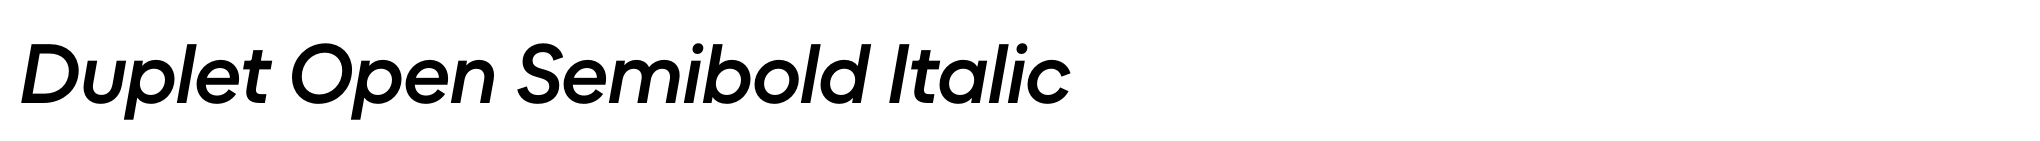 Duplet Open Semibold Italic image